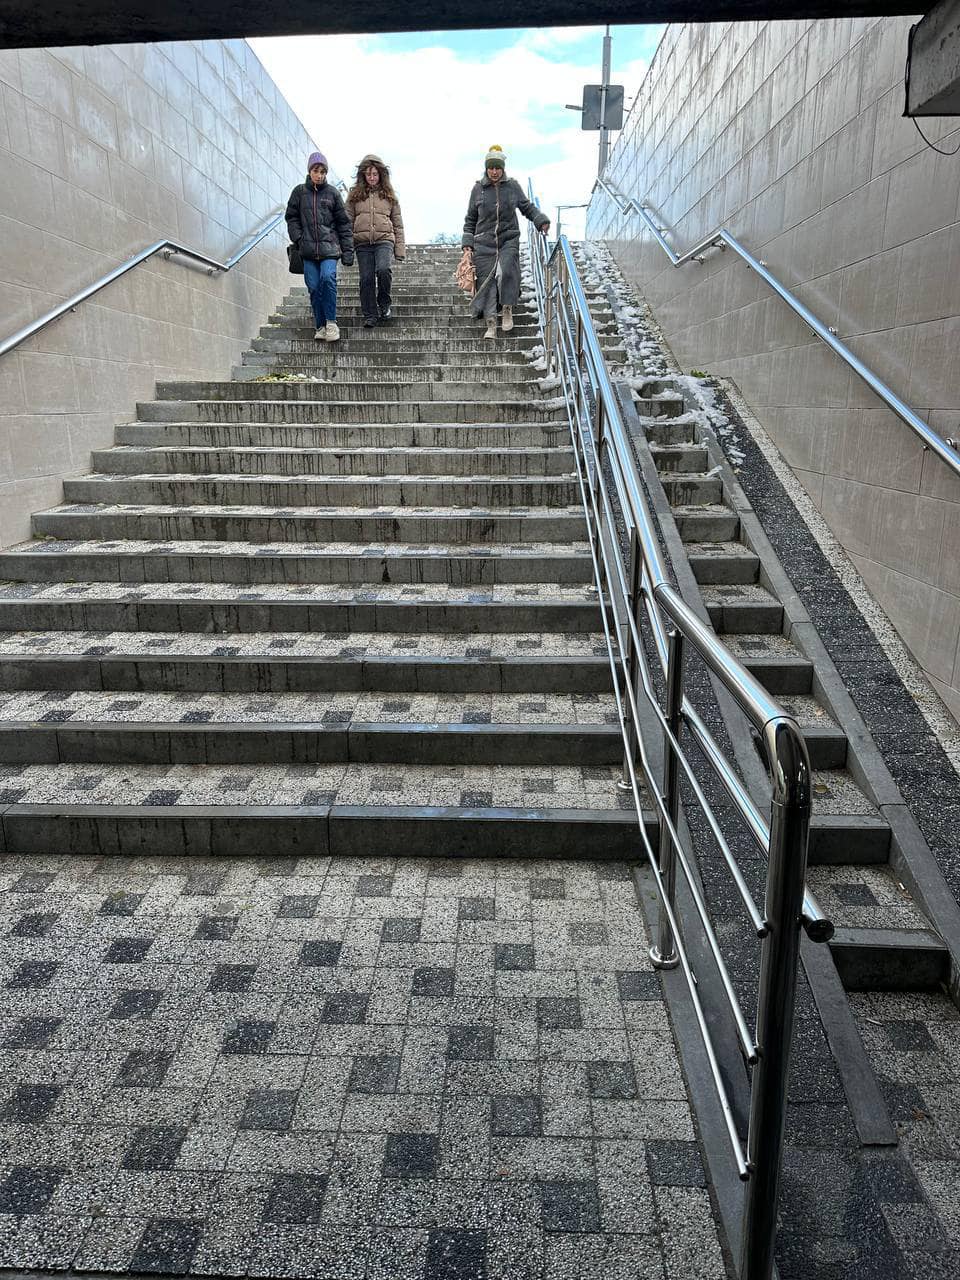 Imagini virale cu oameni care încearcă să coboare pe scări cu gheață, în capitală. Primăria Chișinău reacționează: „V-ați învățat să criticați doar”